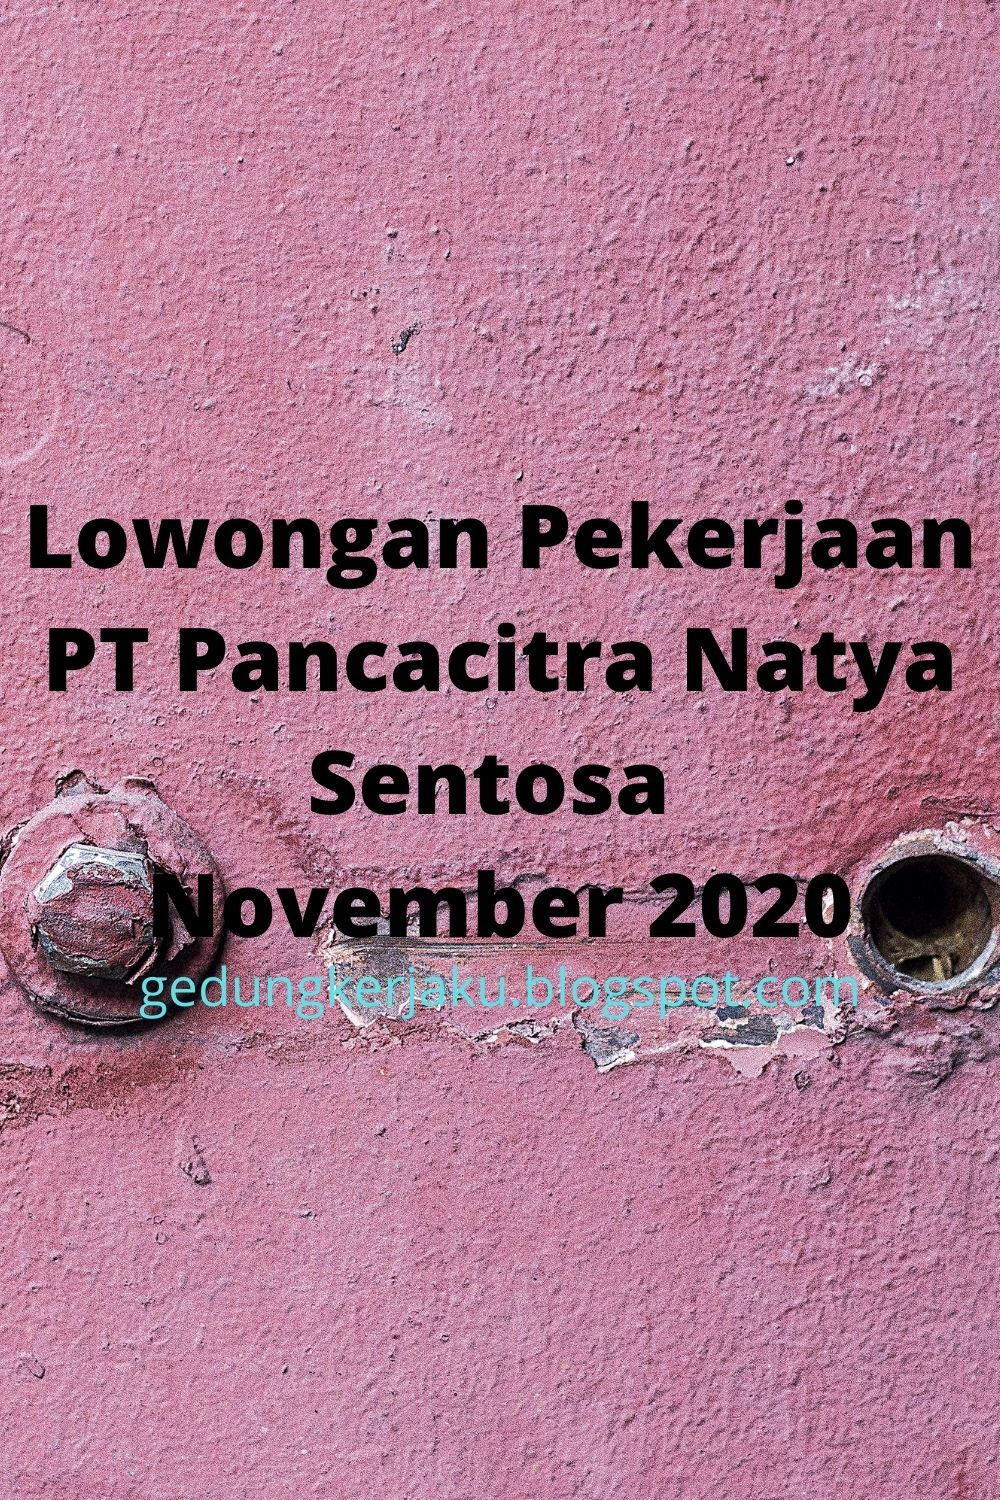 Lowongan Pekerjaan PT Pancacitra Natya Sentosa November 2020